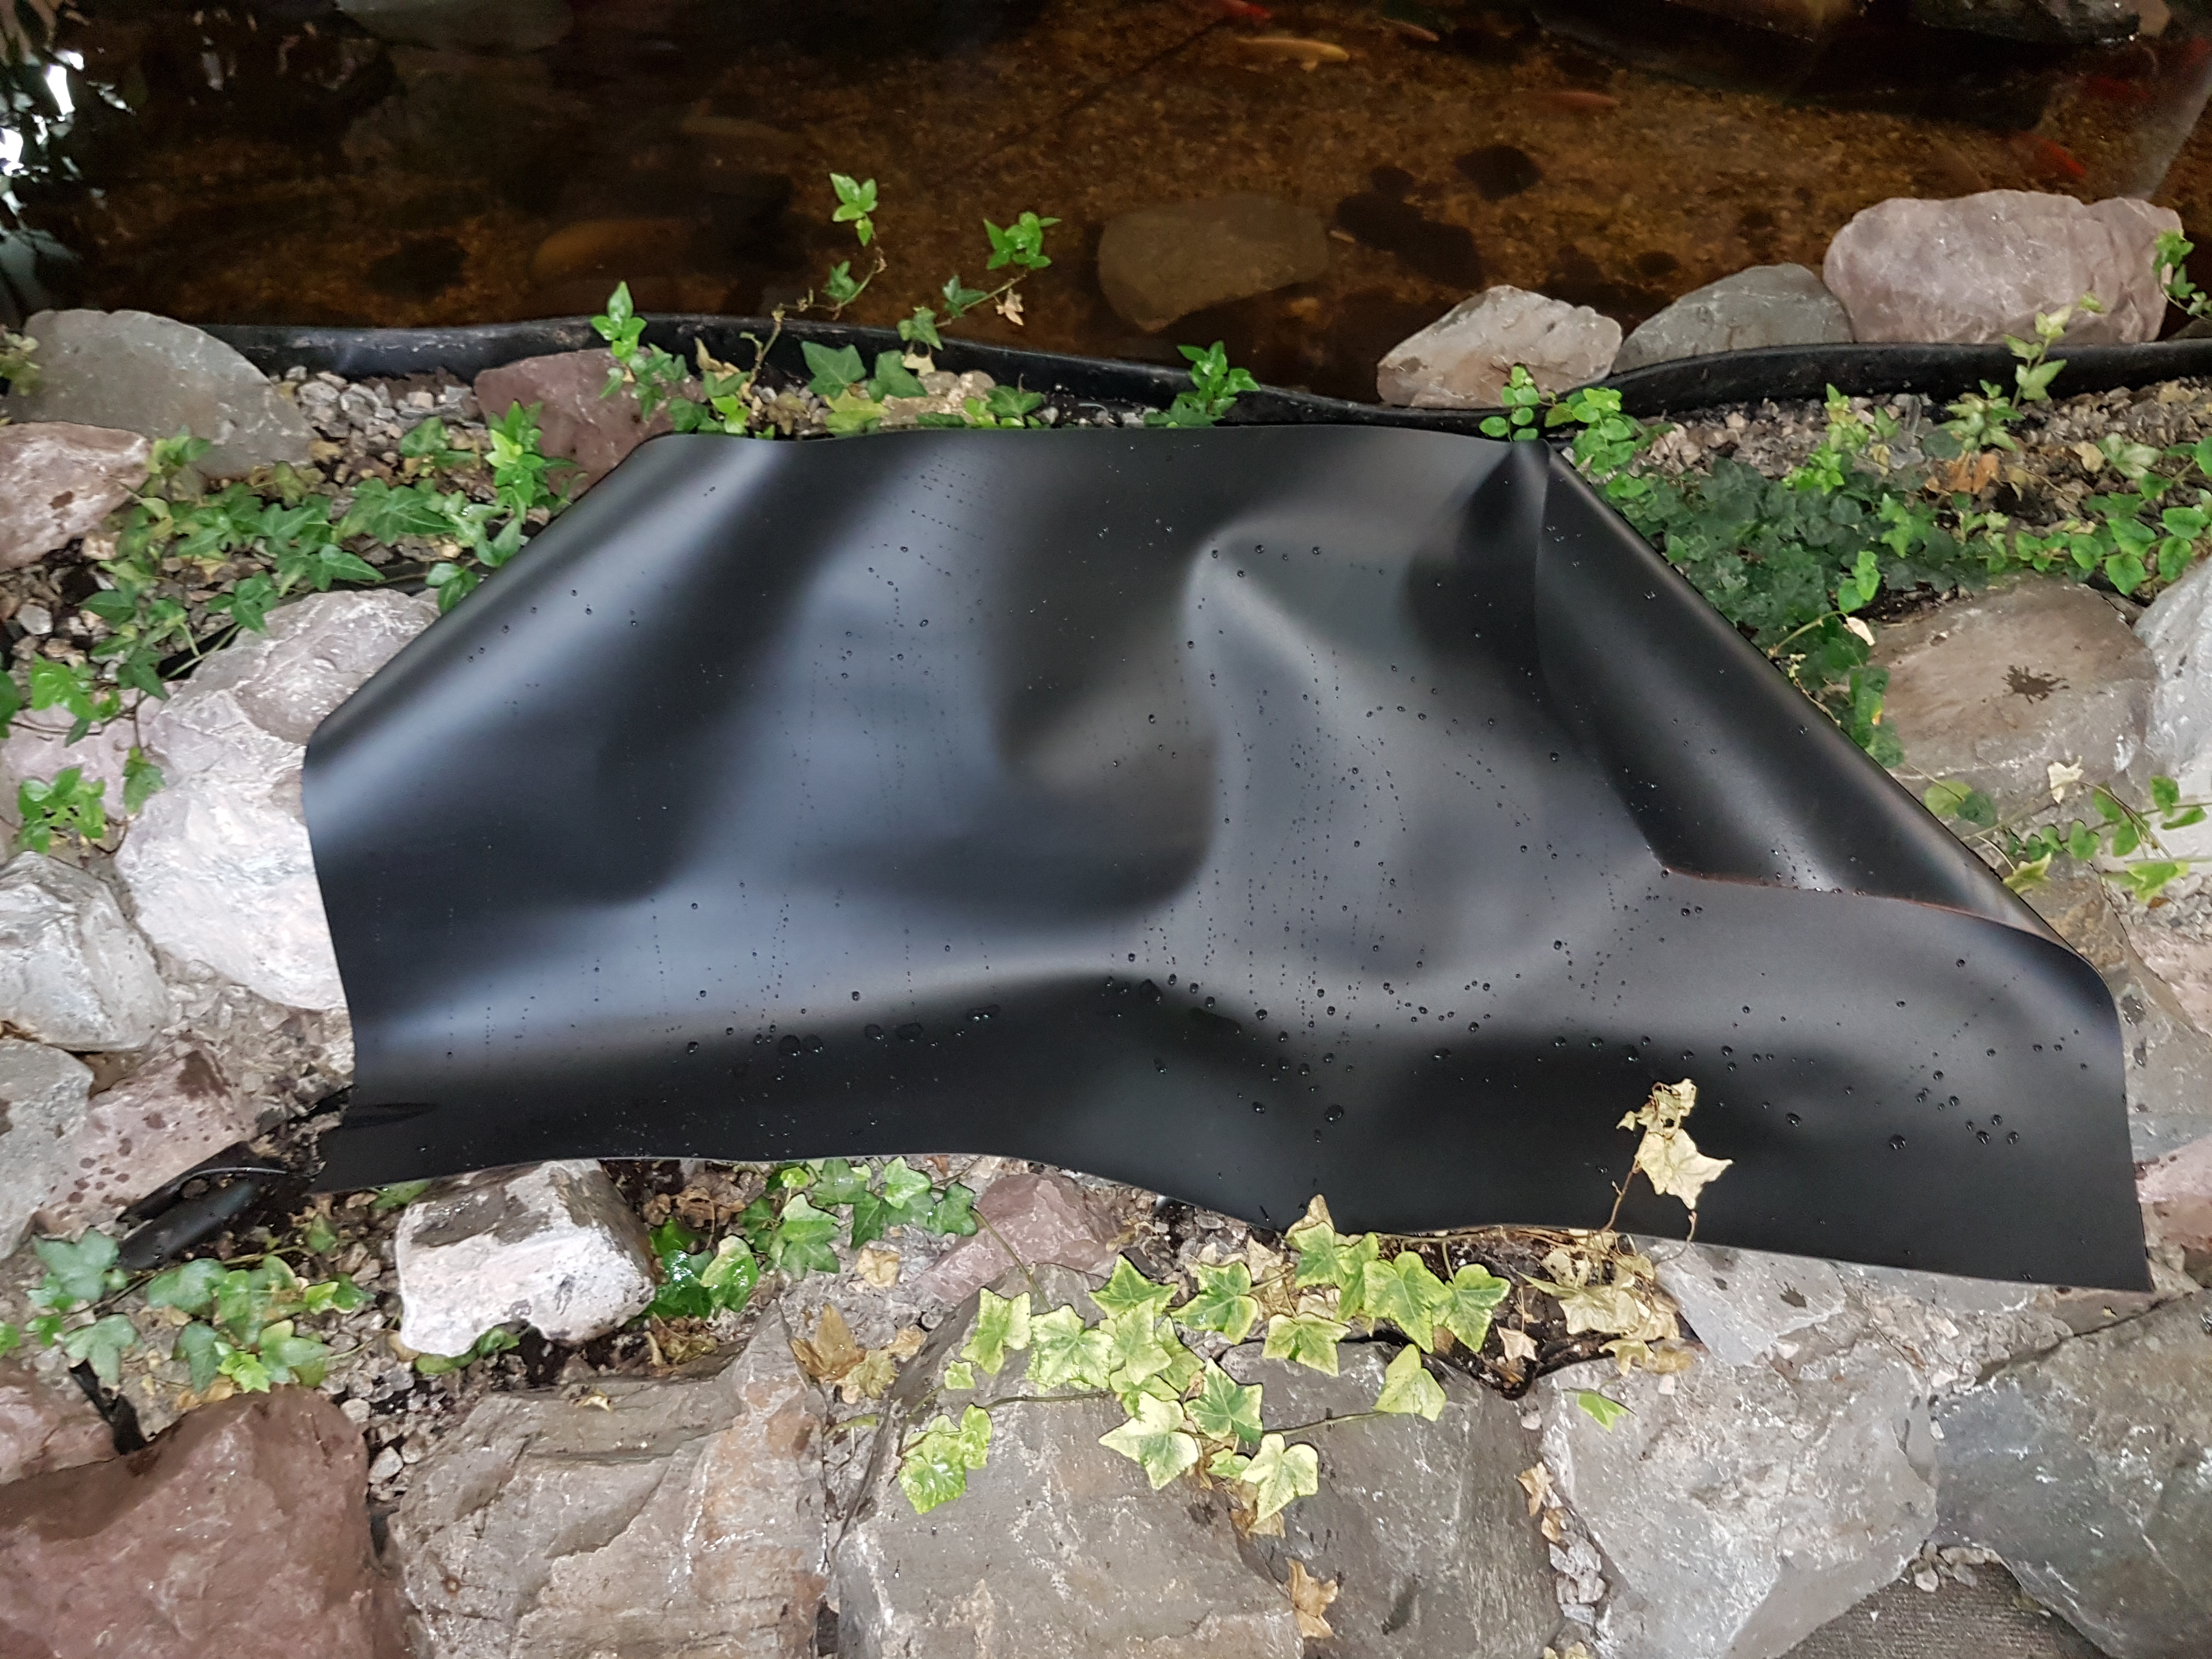 Akwado Teichfolie 0,5 mm PVC-Folie witterungsbeständig Gartenteichfolie vielseitig verwendbar 5m x 6m 